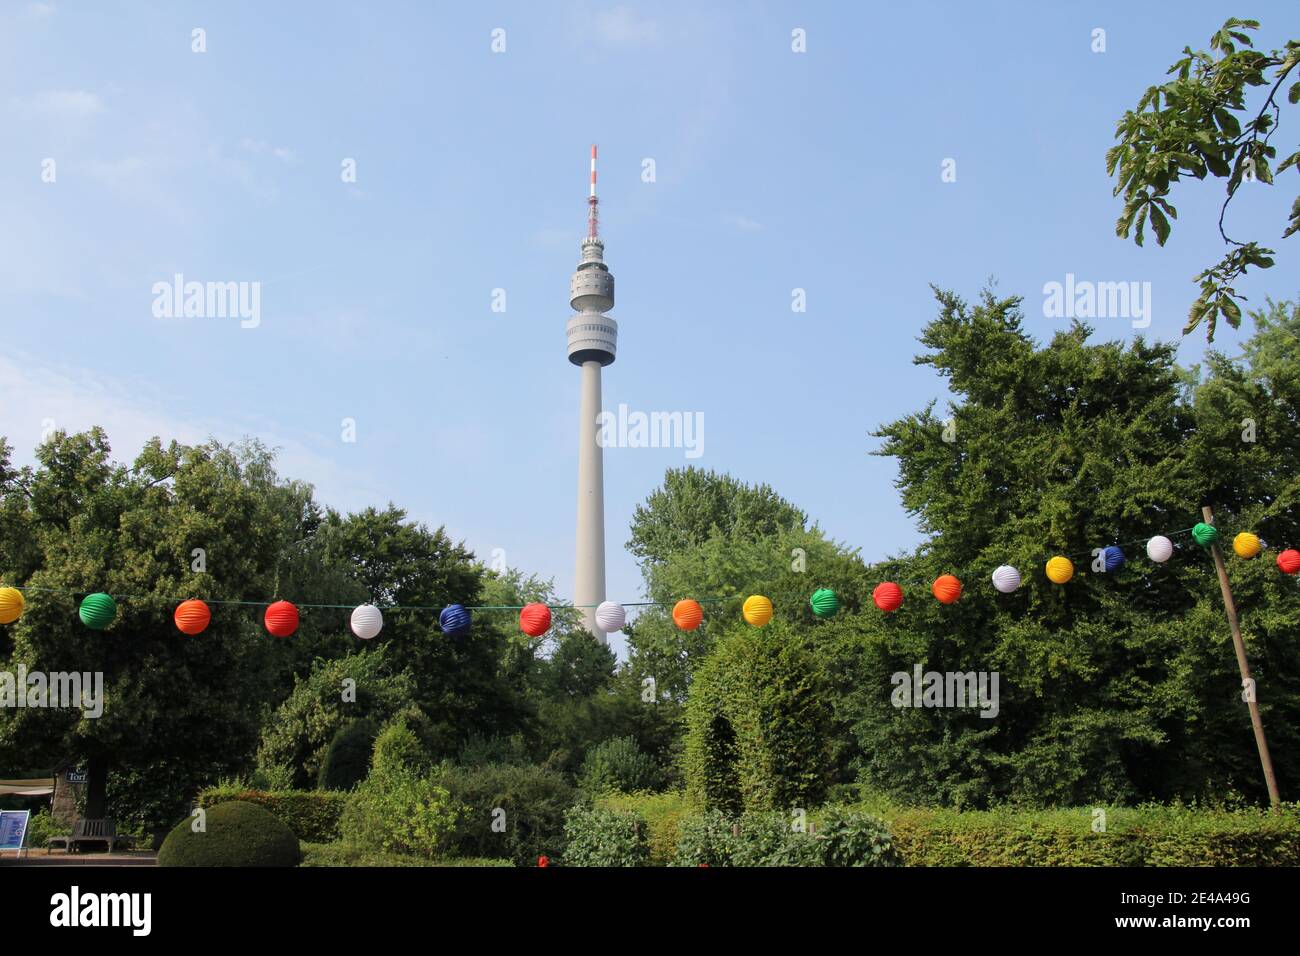 Impressionen aus dem Westfalenpark in Dortmund Stock Photo